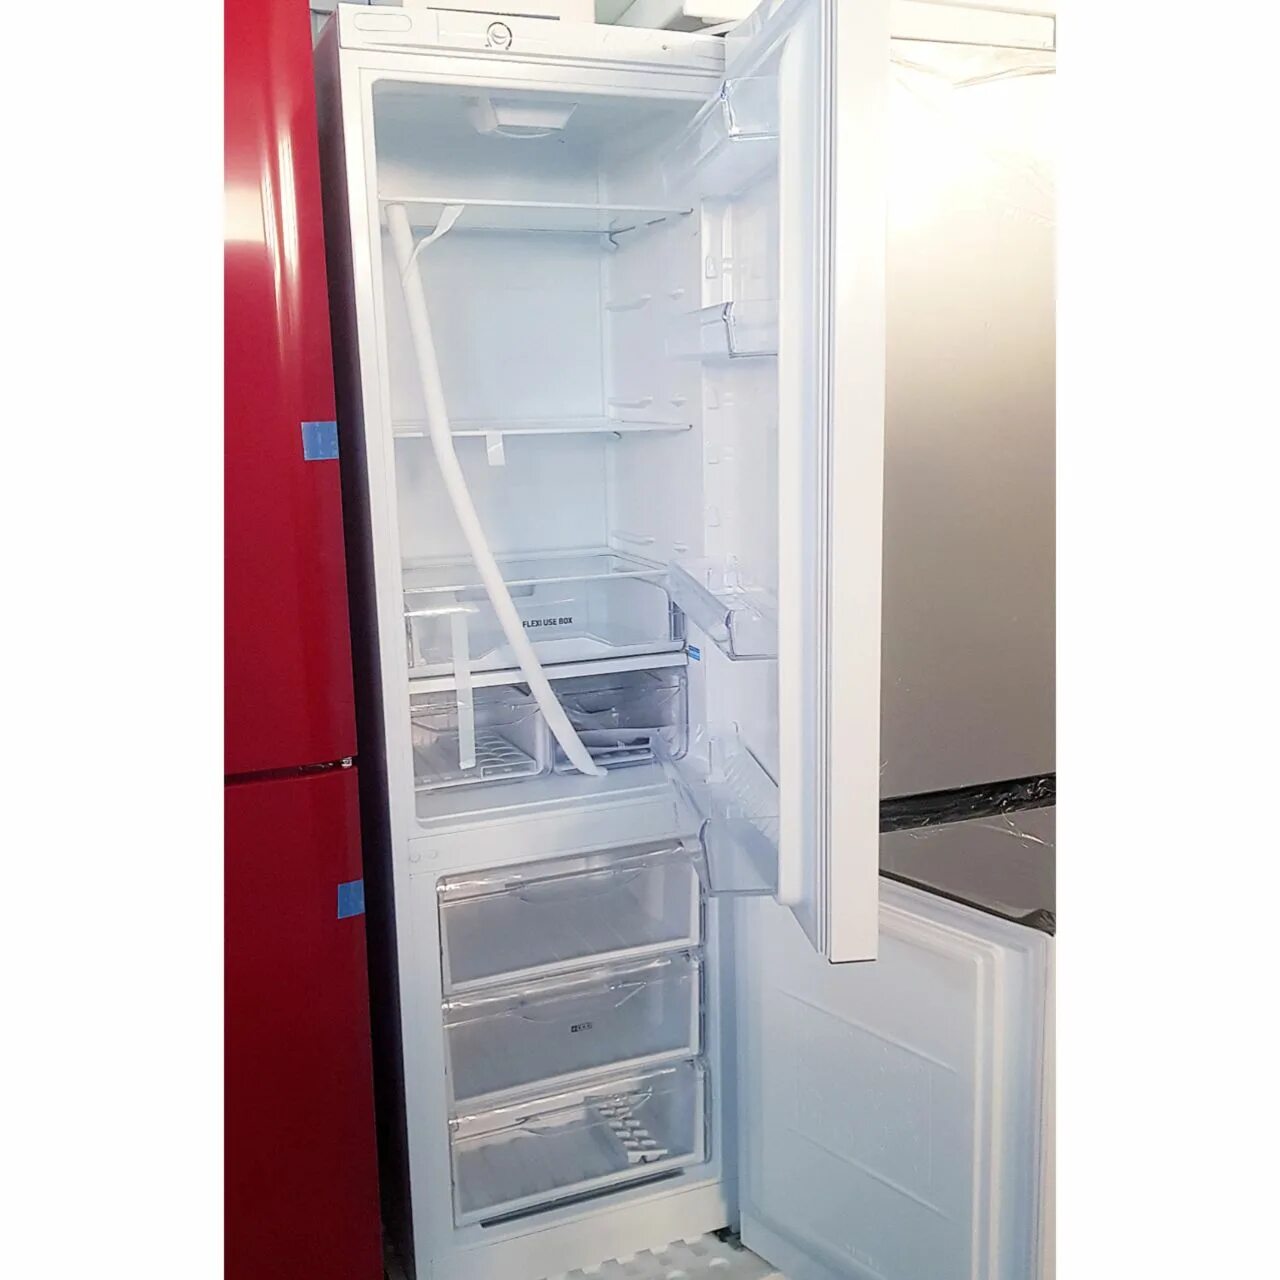 Холодильник индезит двухкамерный модели. Индезит холодильник Baan 10 год выпуска 2010. Модели холодильников Индезит двухкамерный 2006 года. Холодильник Индезит двухкамерный внешний вид.